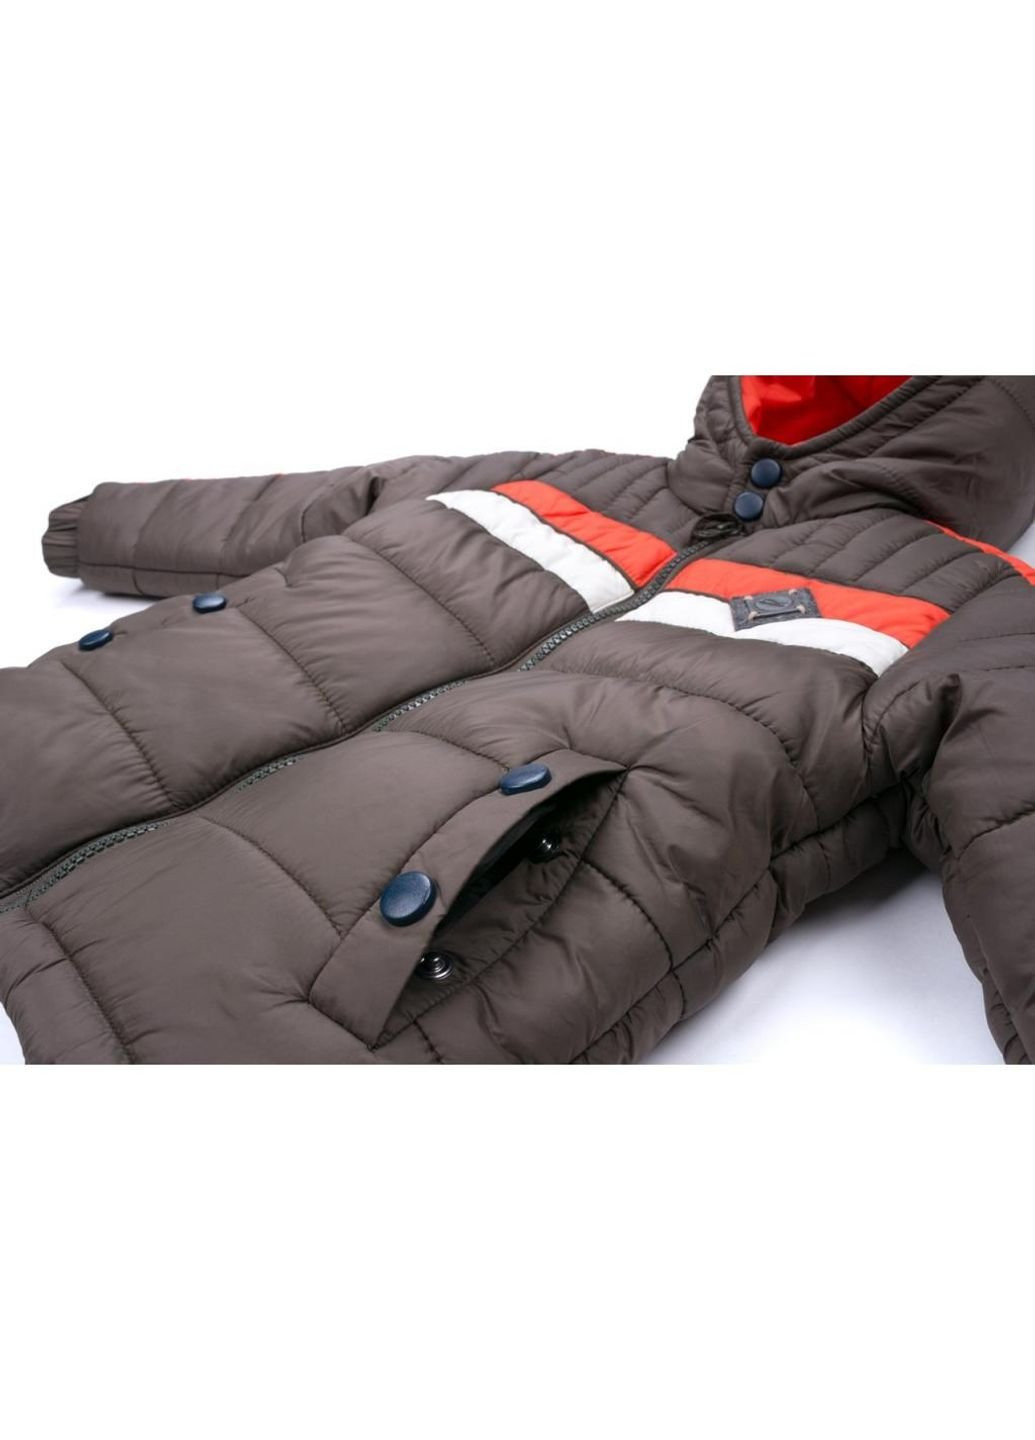 Коричнева зимня куртка з оранжевою смугою (2663-116b-brown) Verscon